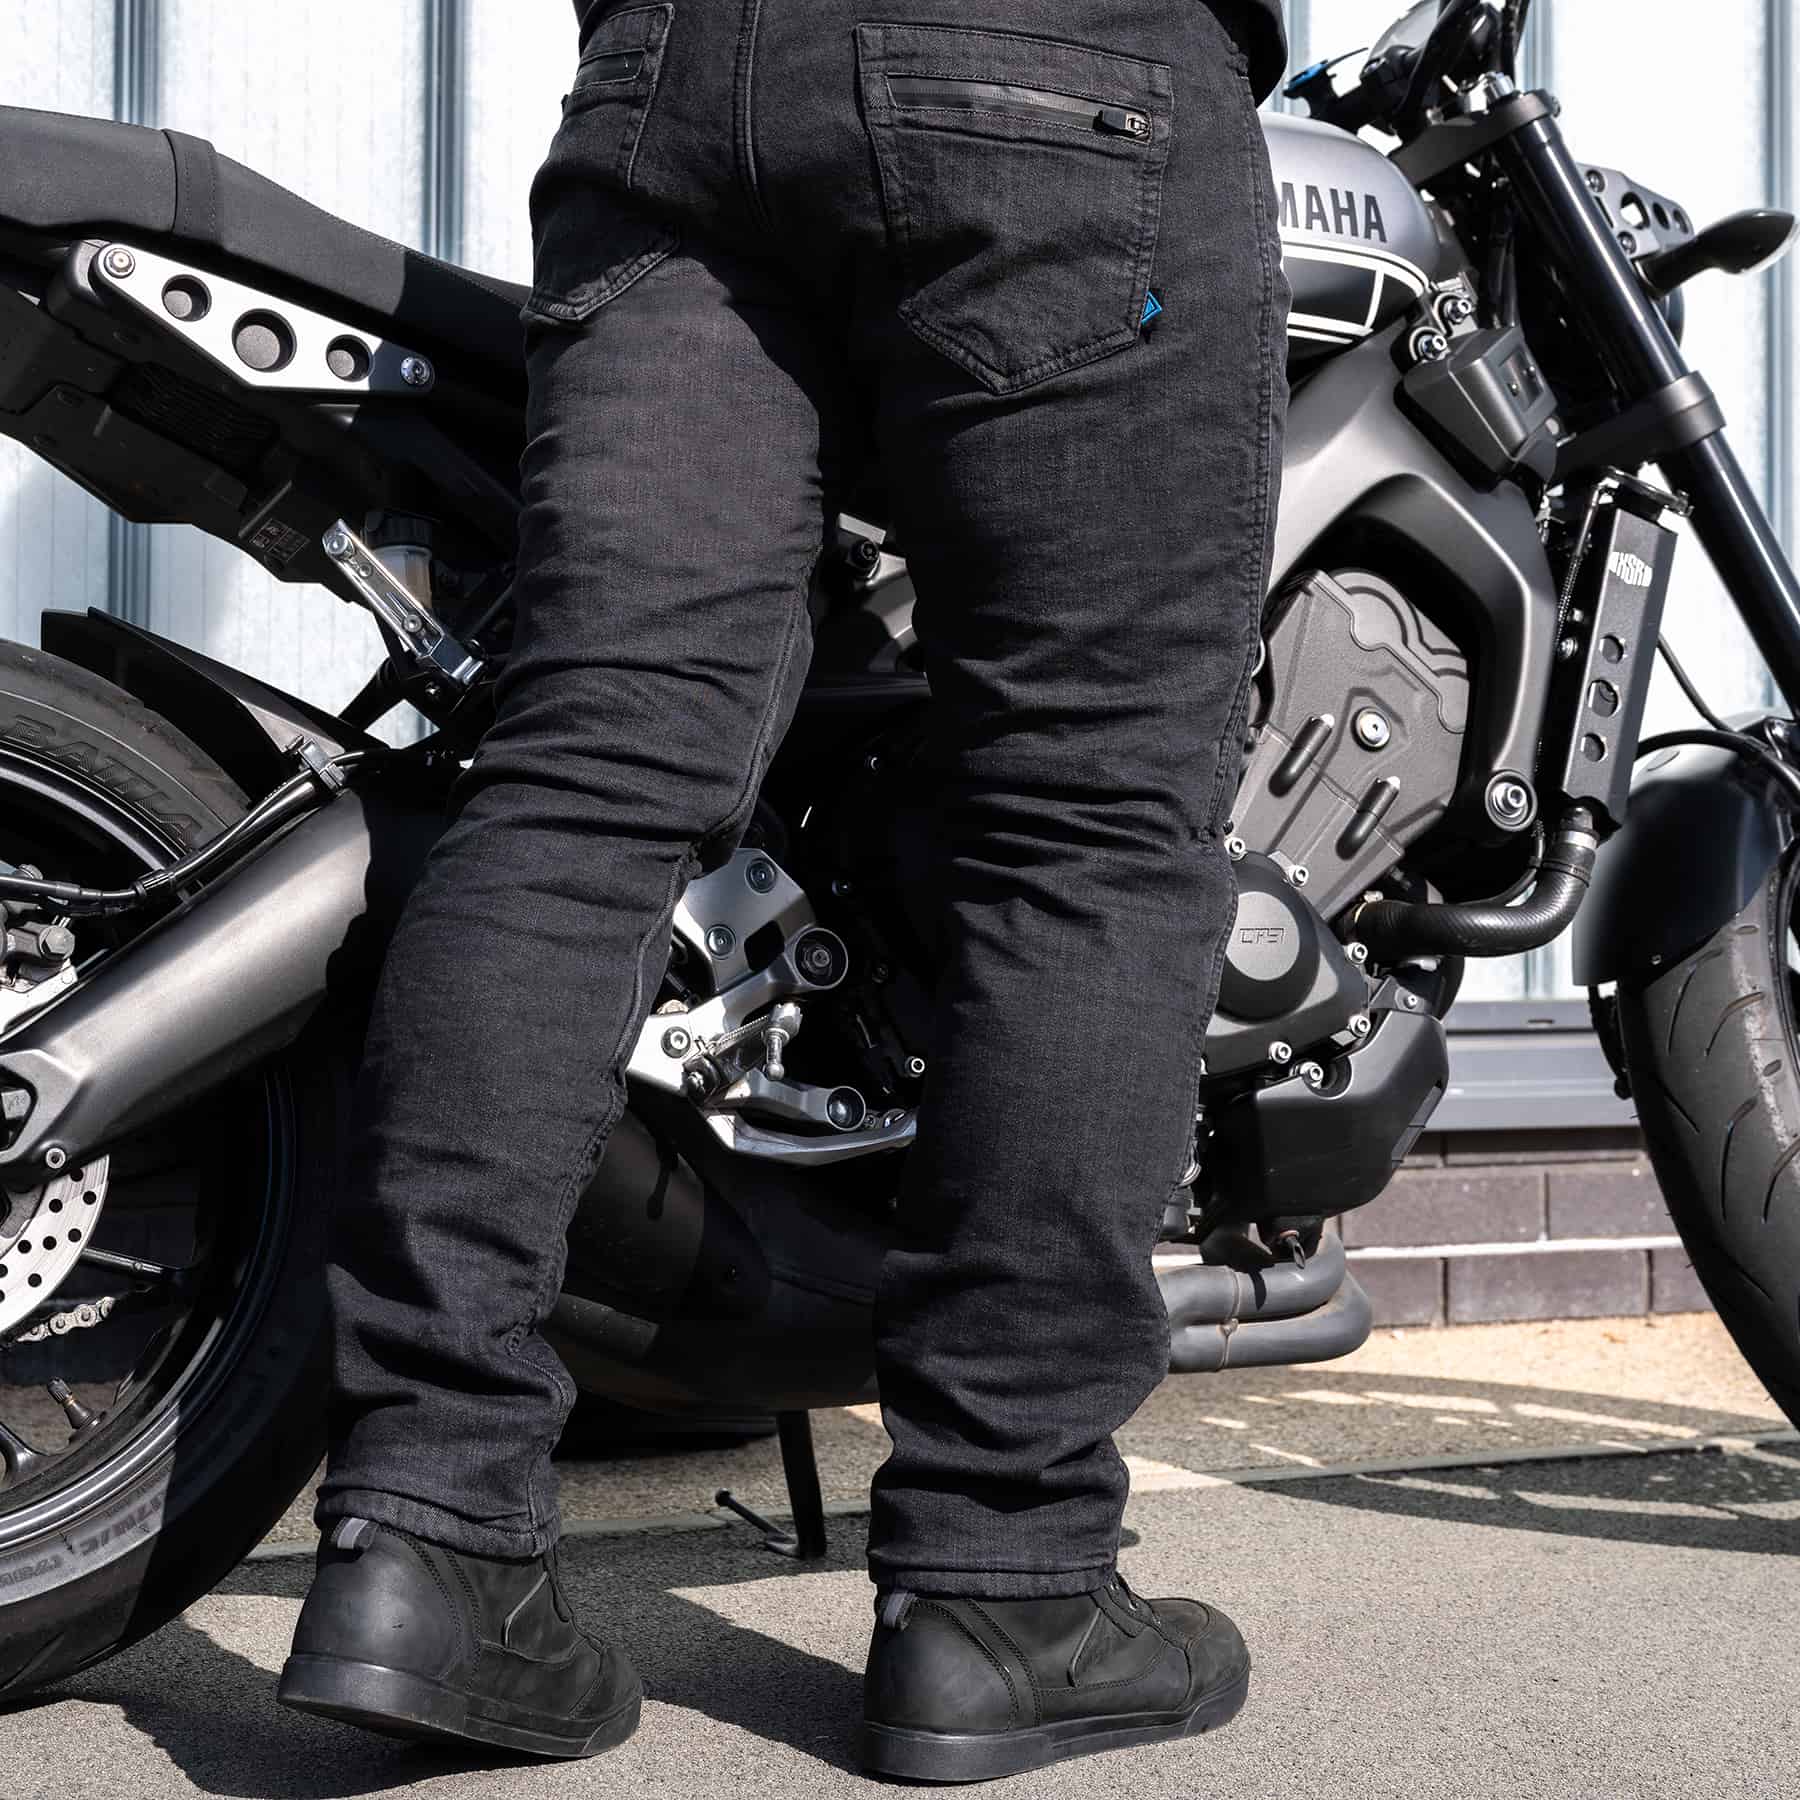 Merlin Bike Gear - Mason Reinforced Denim Motorcycle Jeans